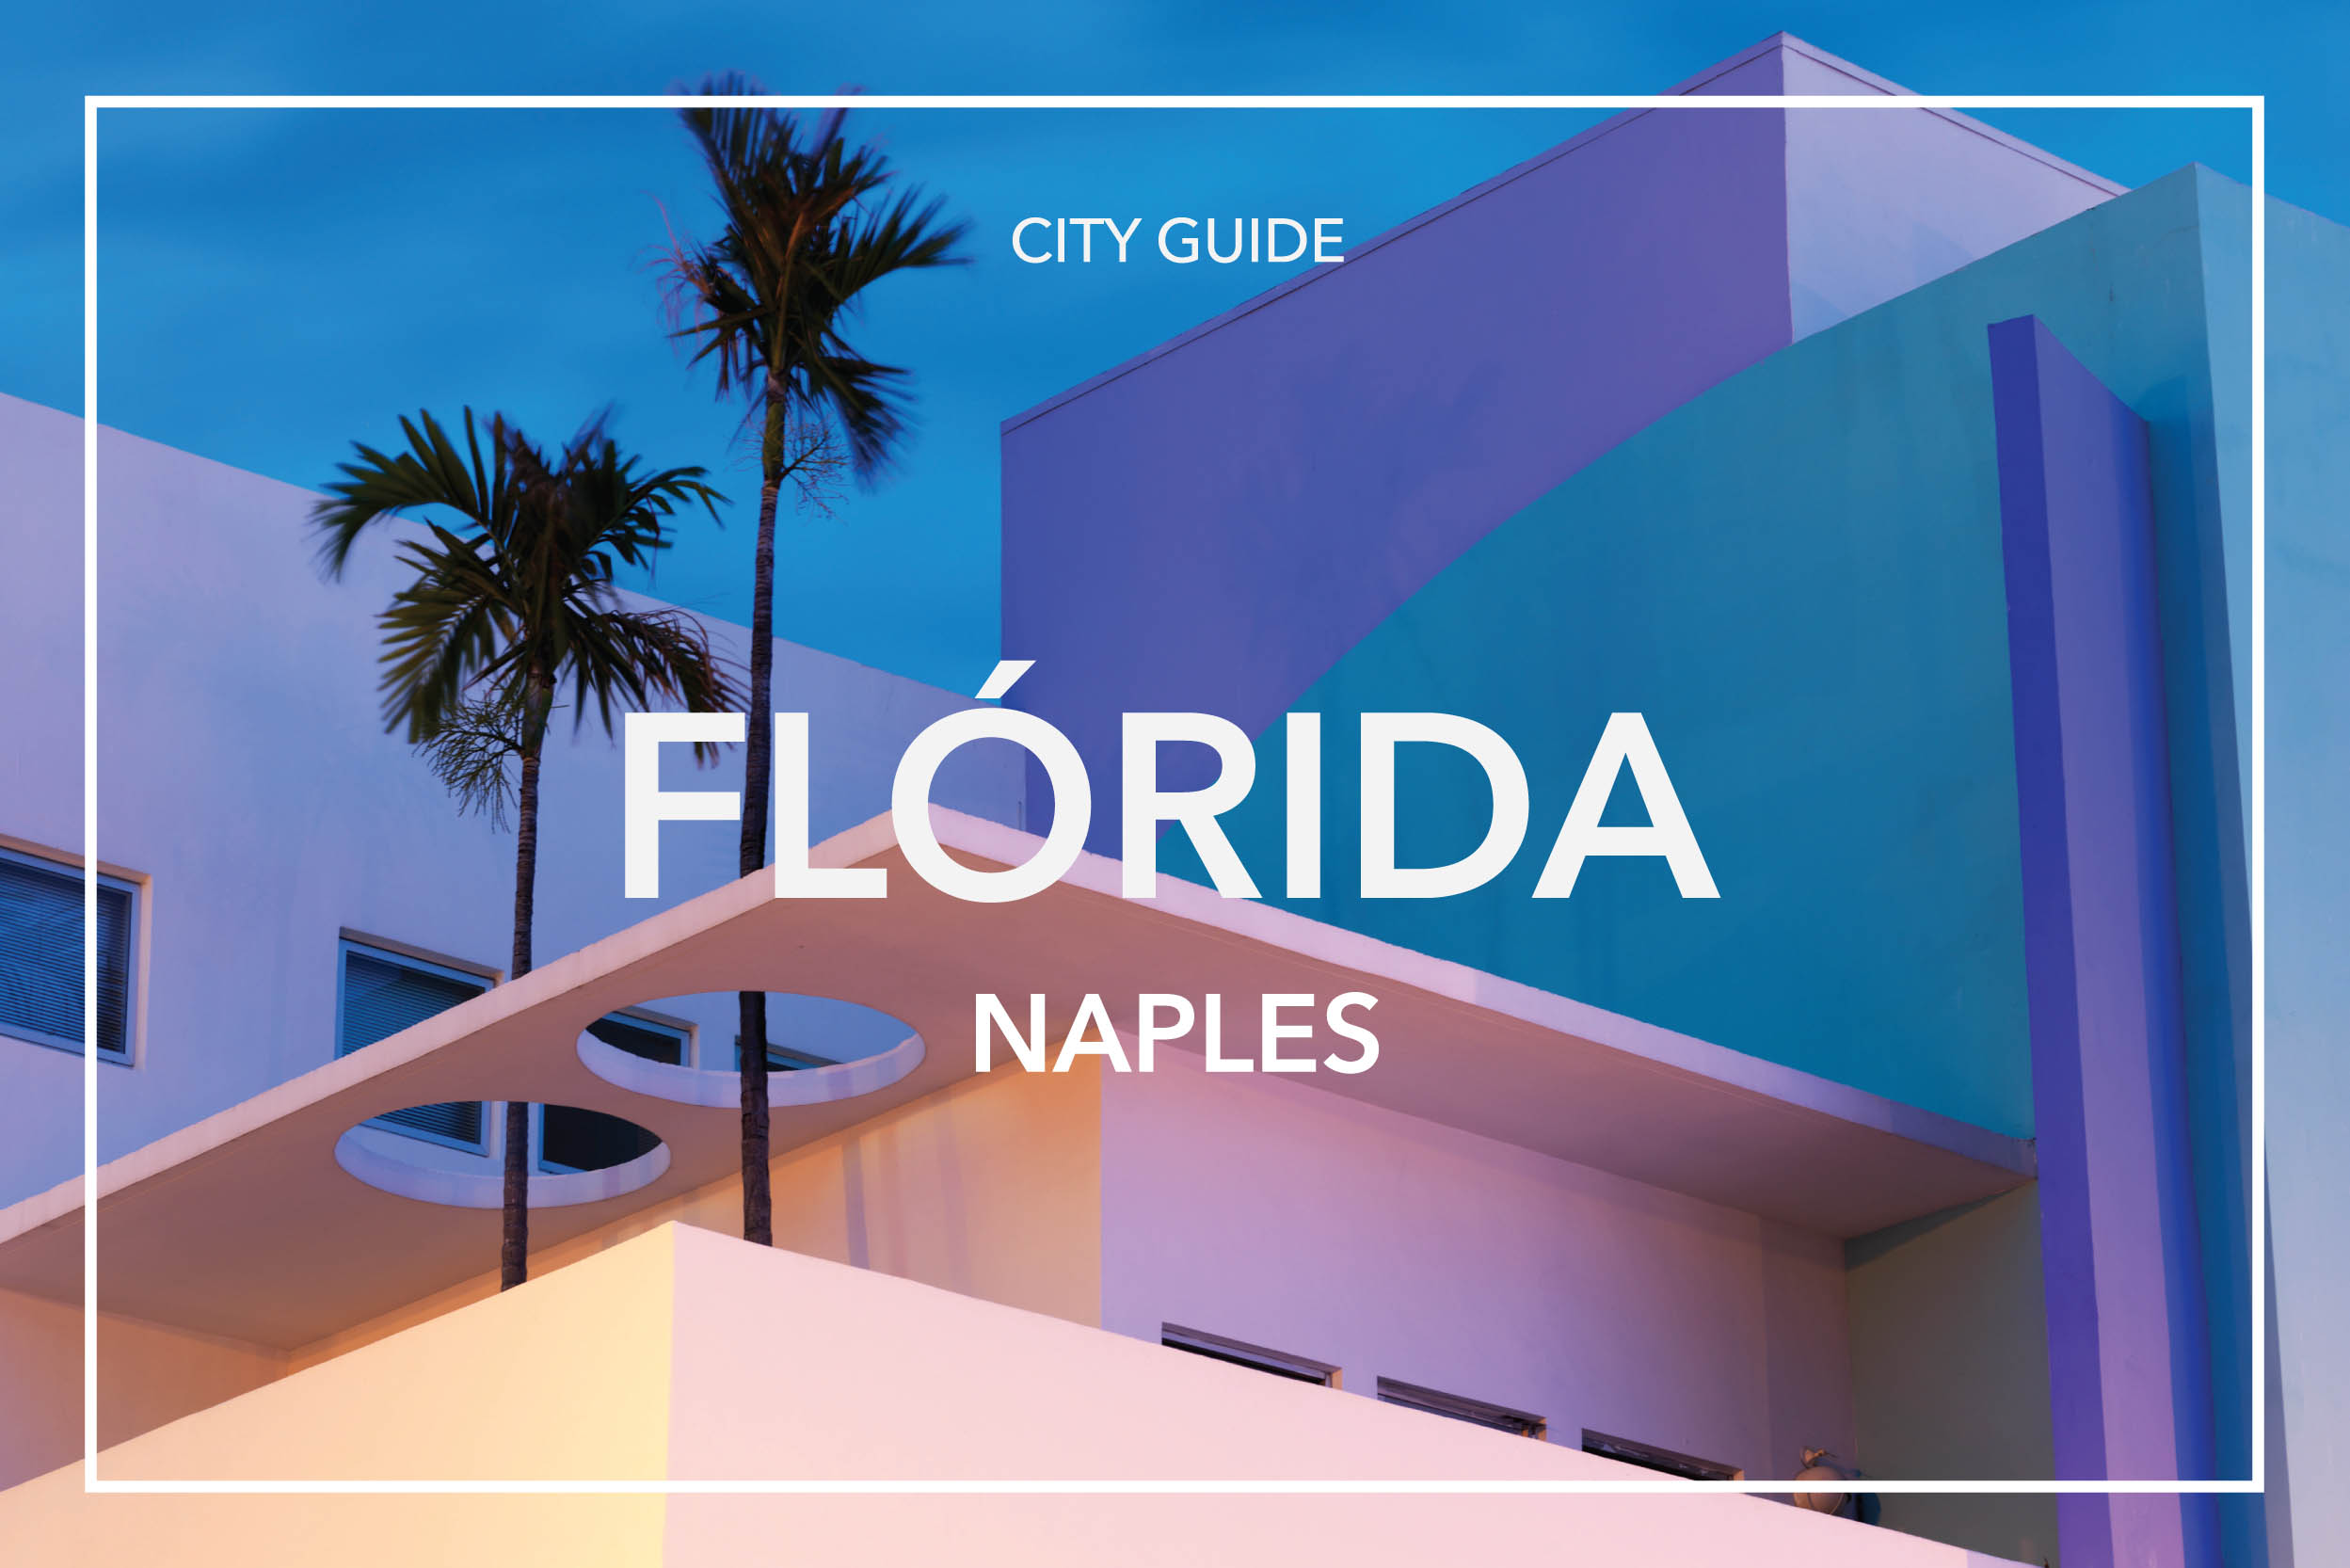 CITYGUIDE_FLORIDA_FRAME_NAPLES